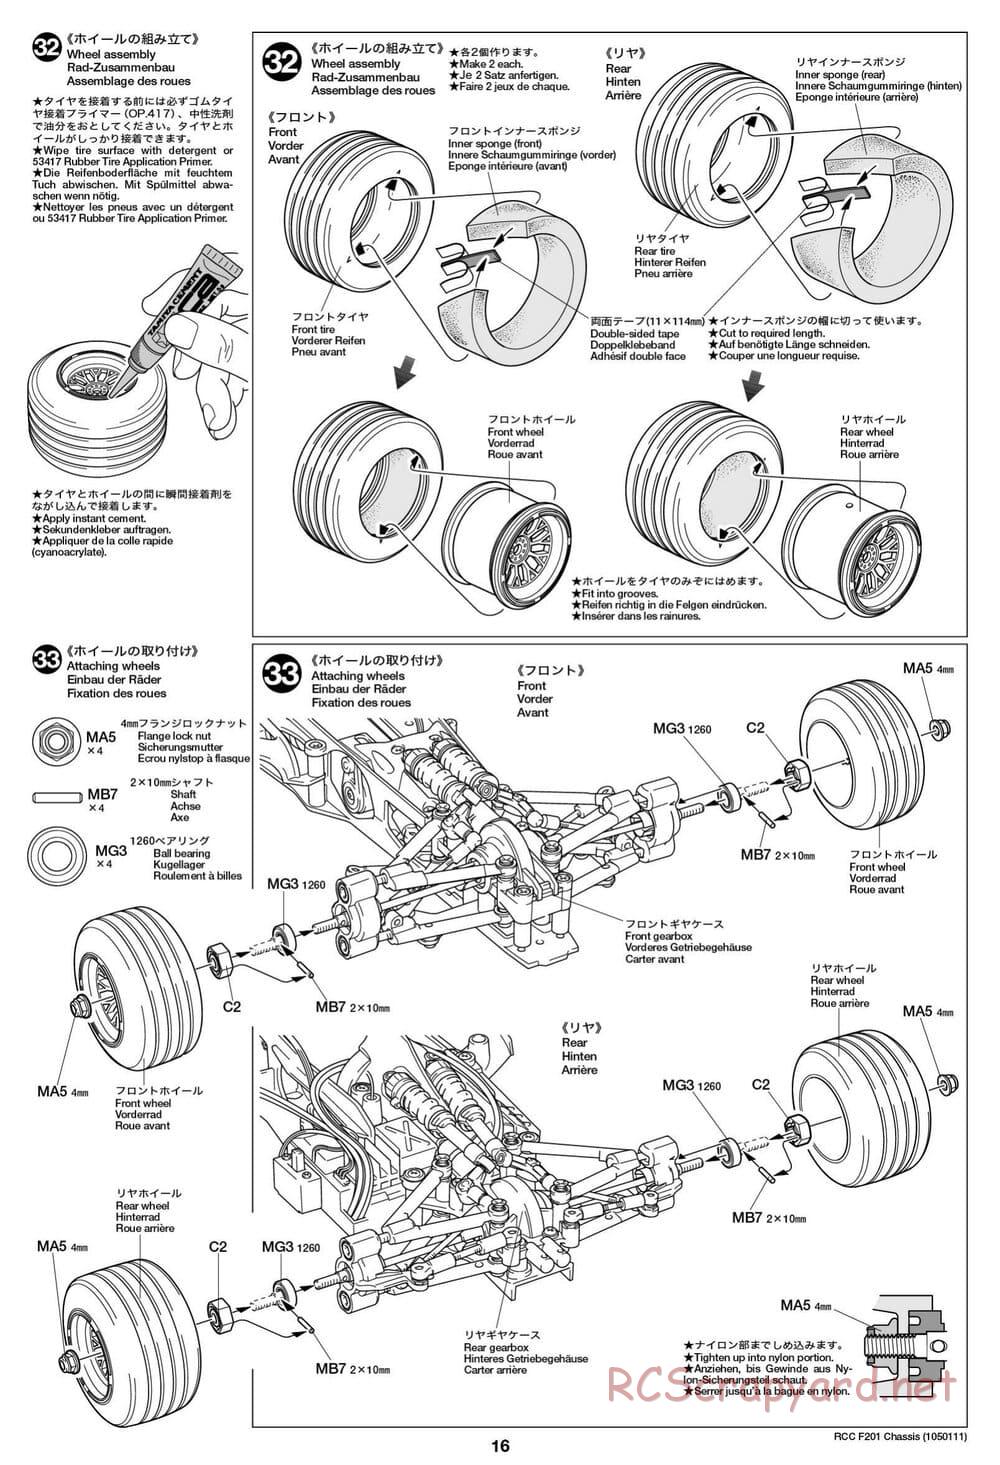 Tamiya - F201 Chassis - Manual - Page 16